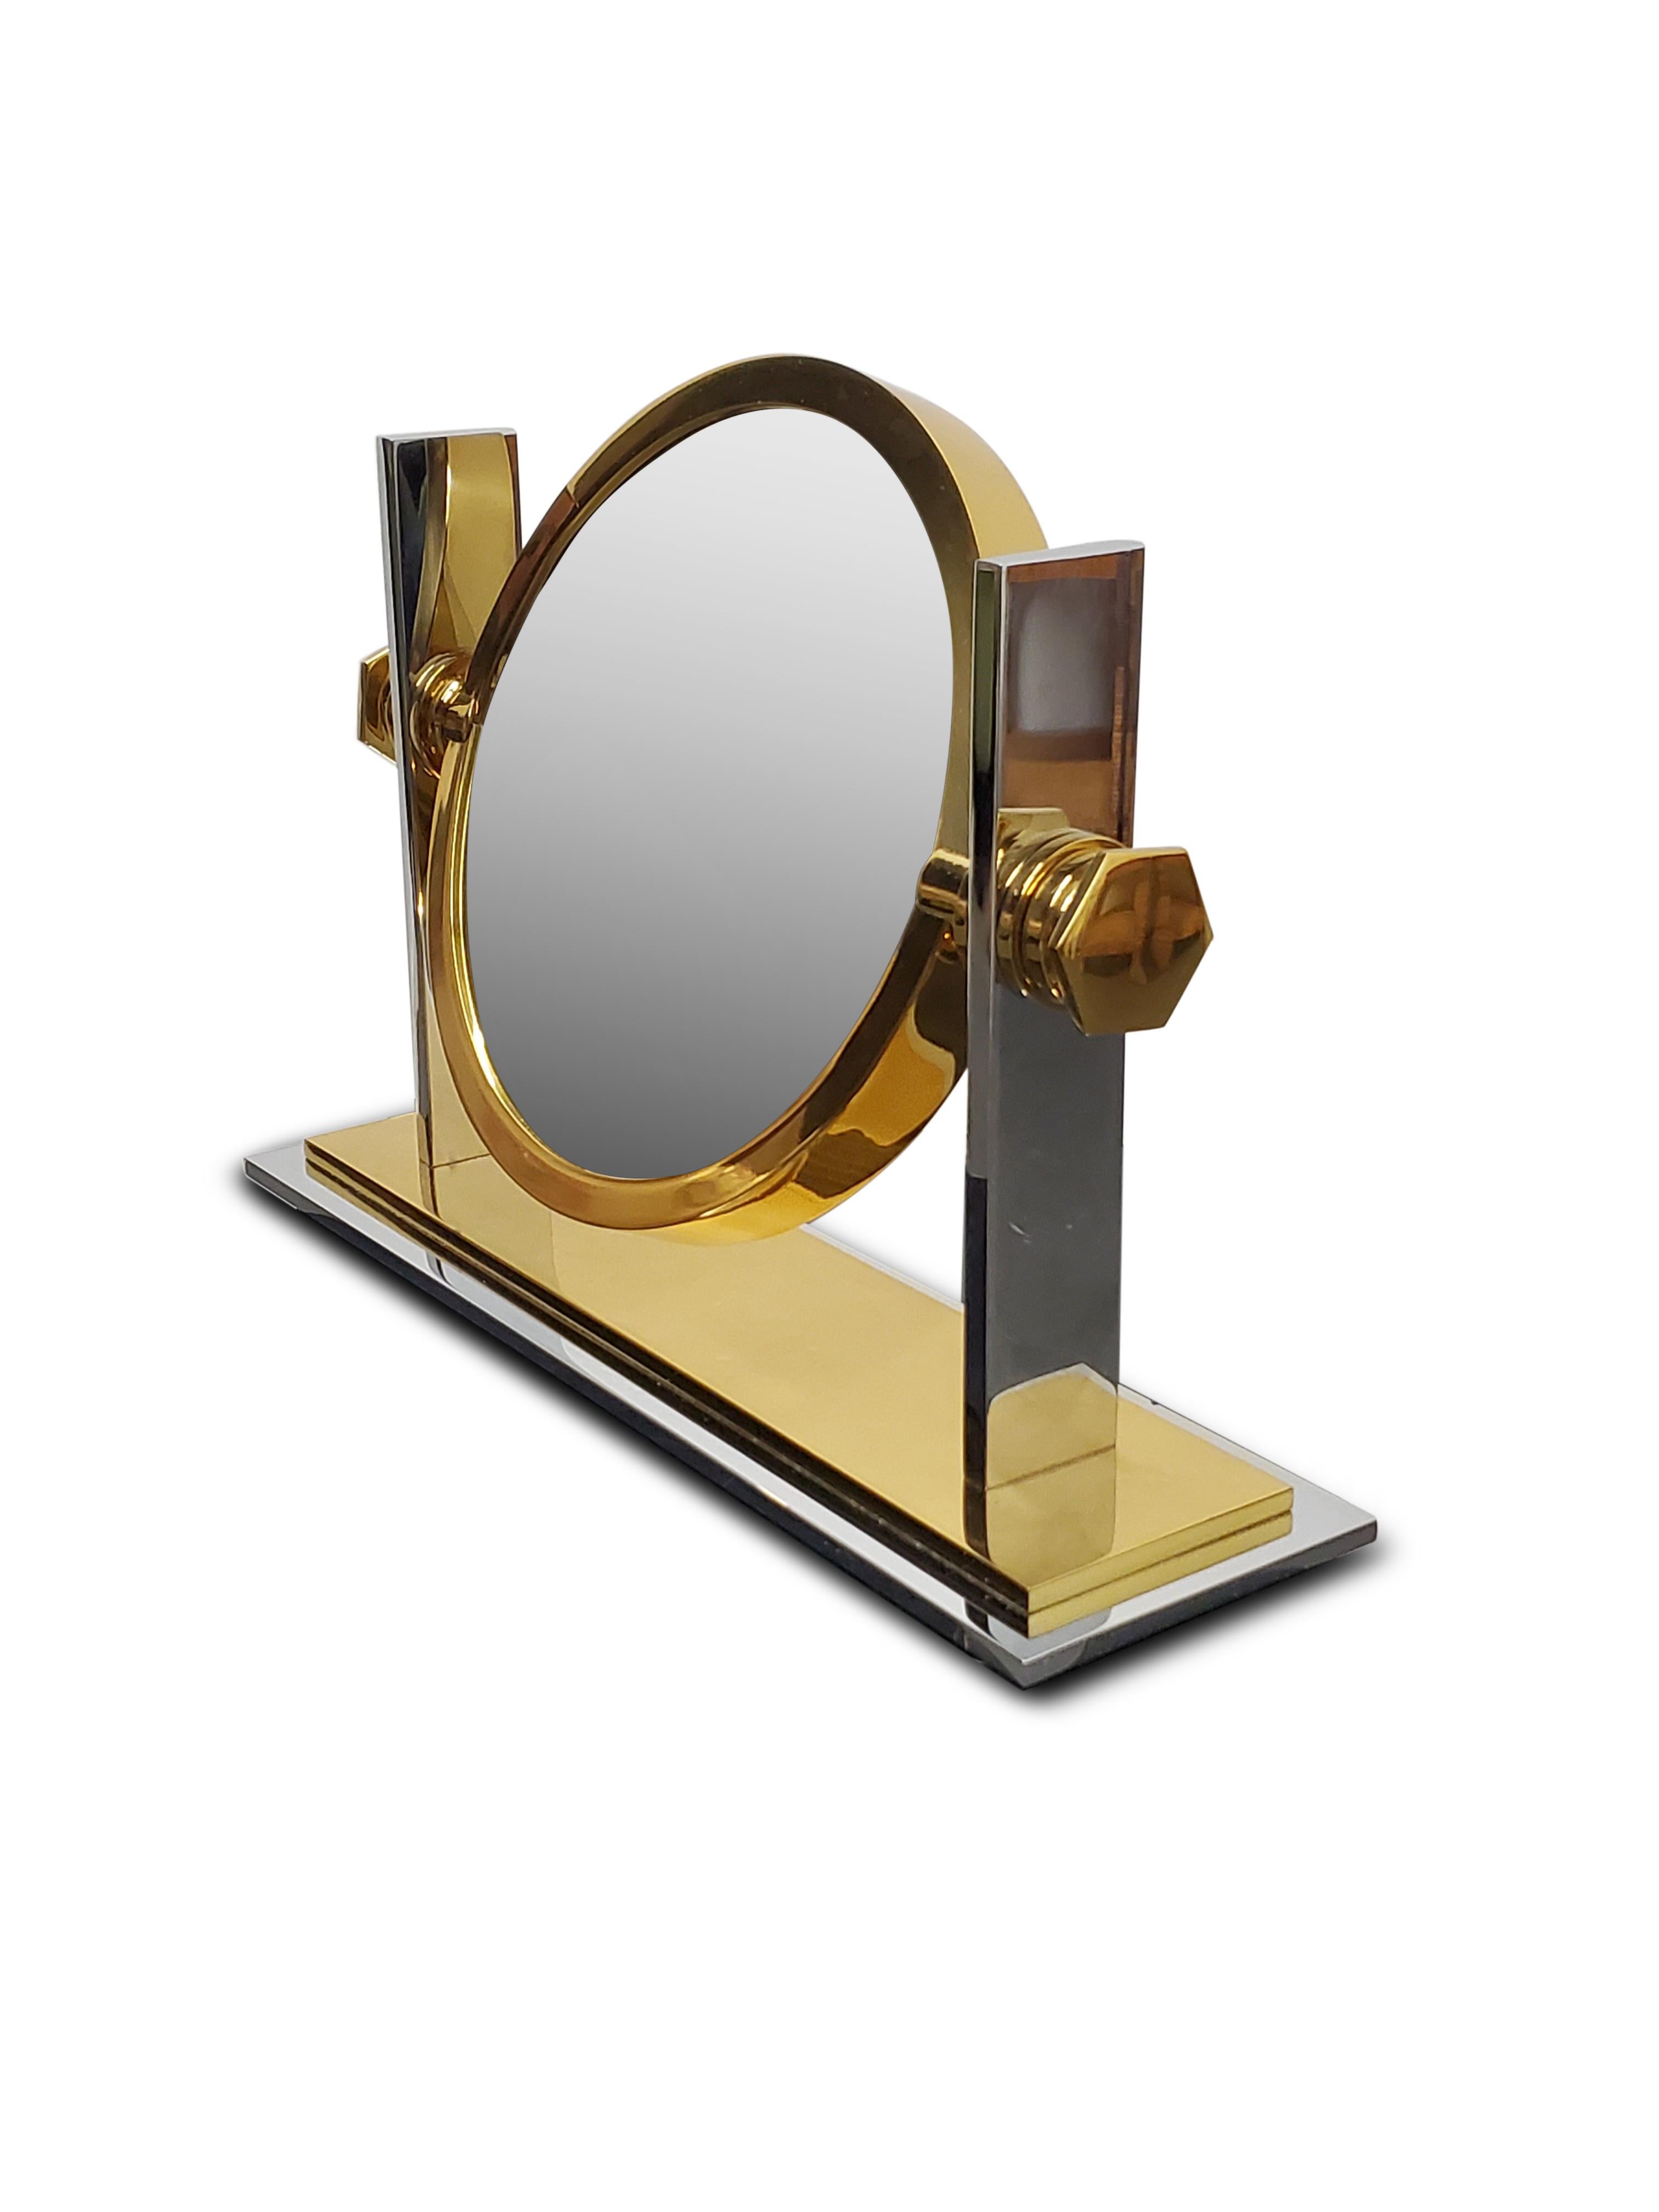 Karl Springer brass and Nickel Vanity mirror.